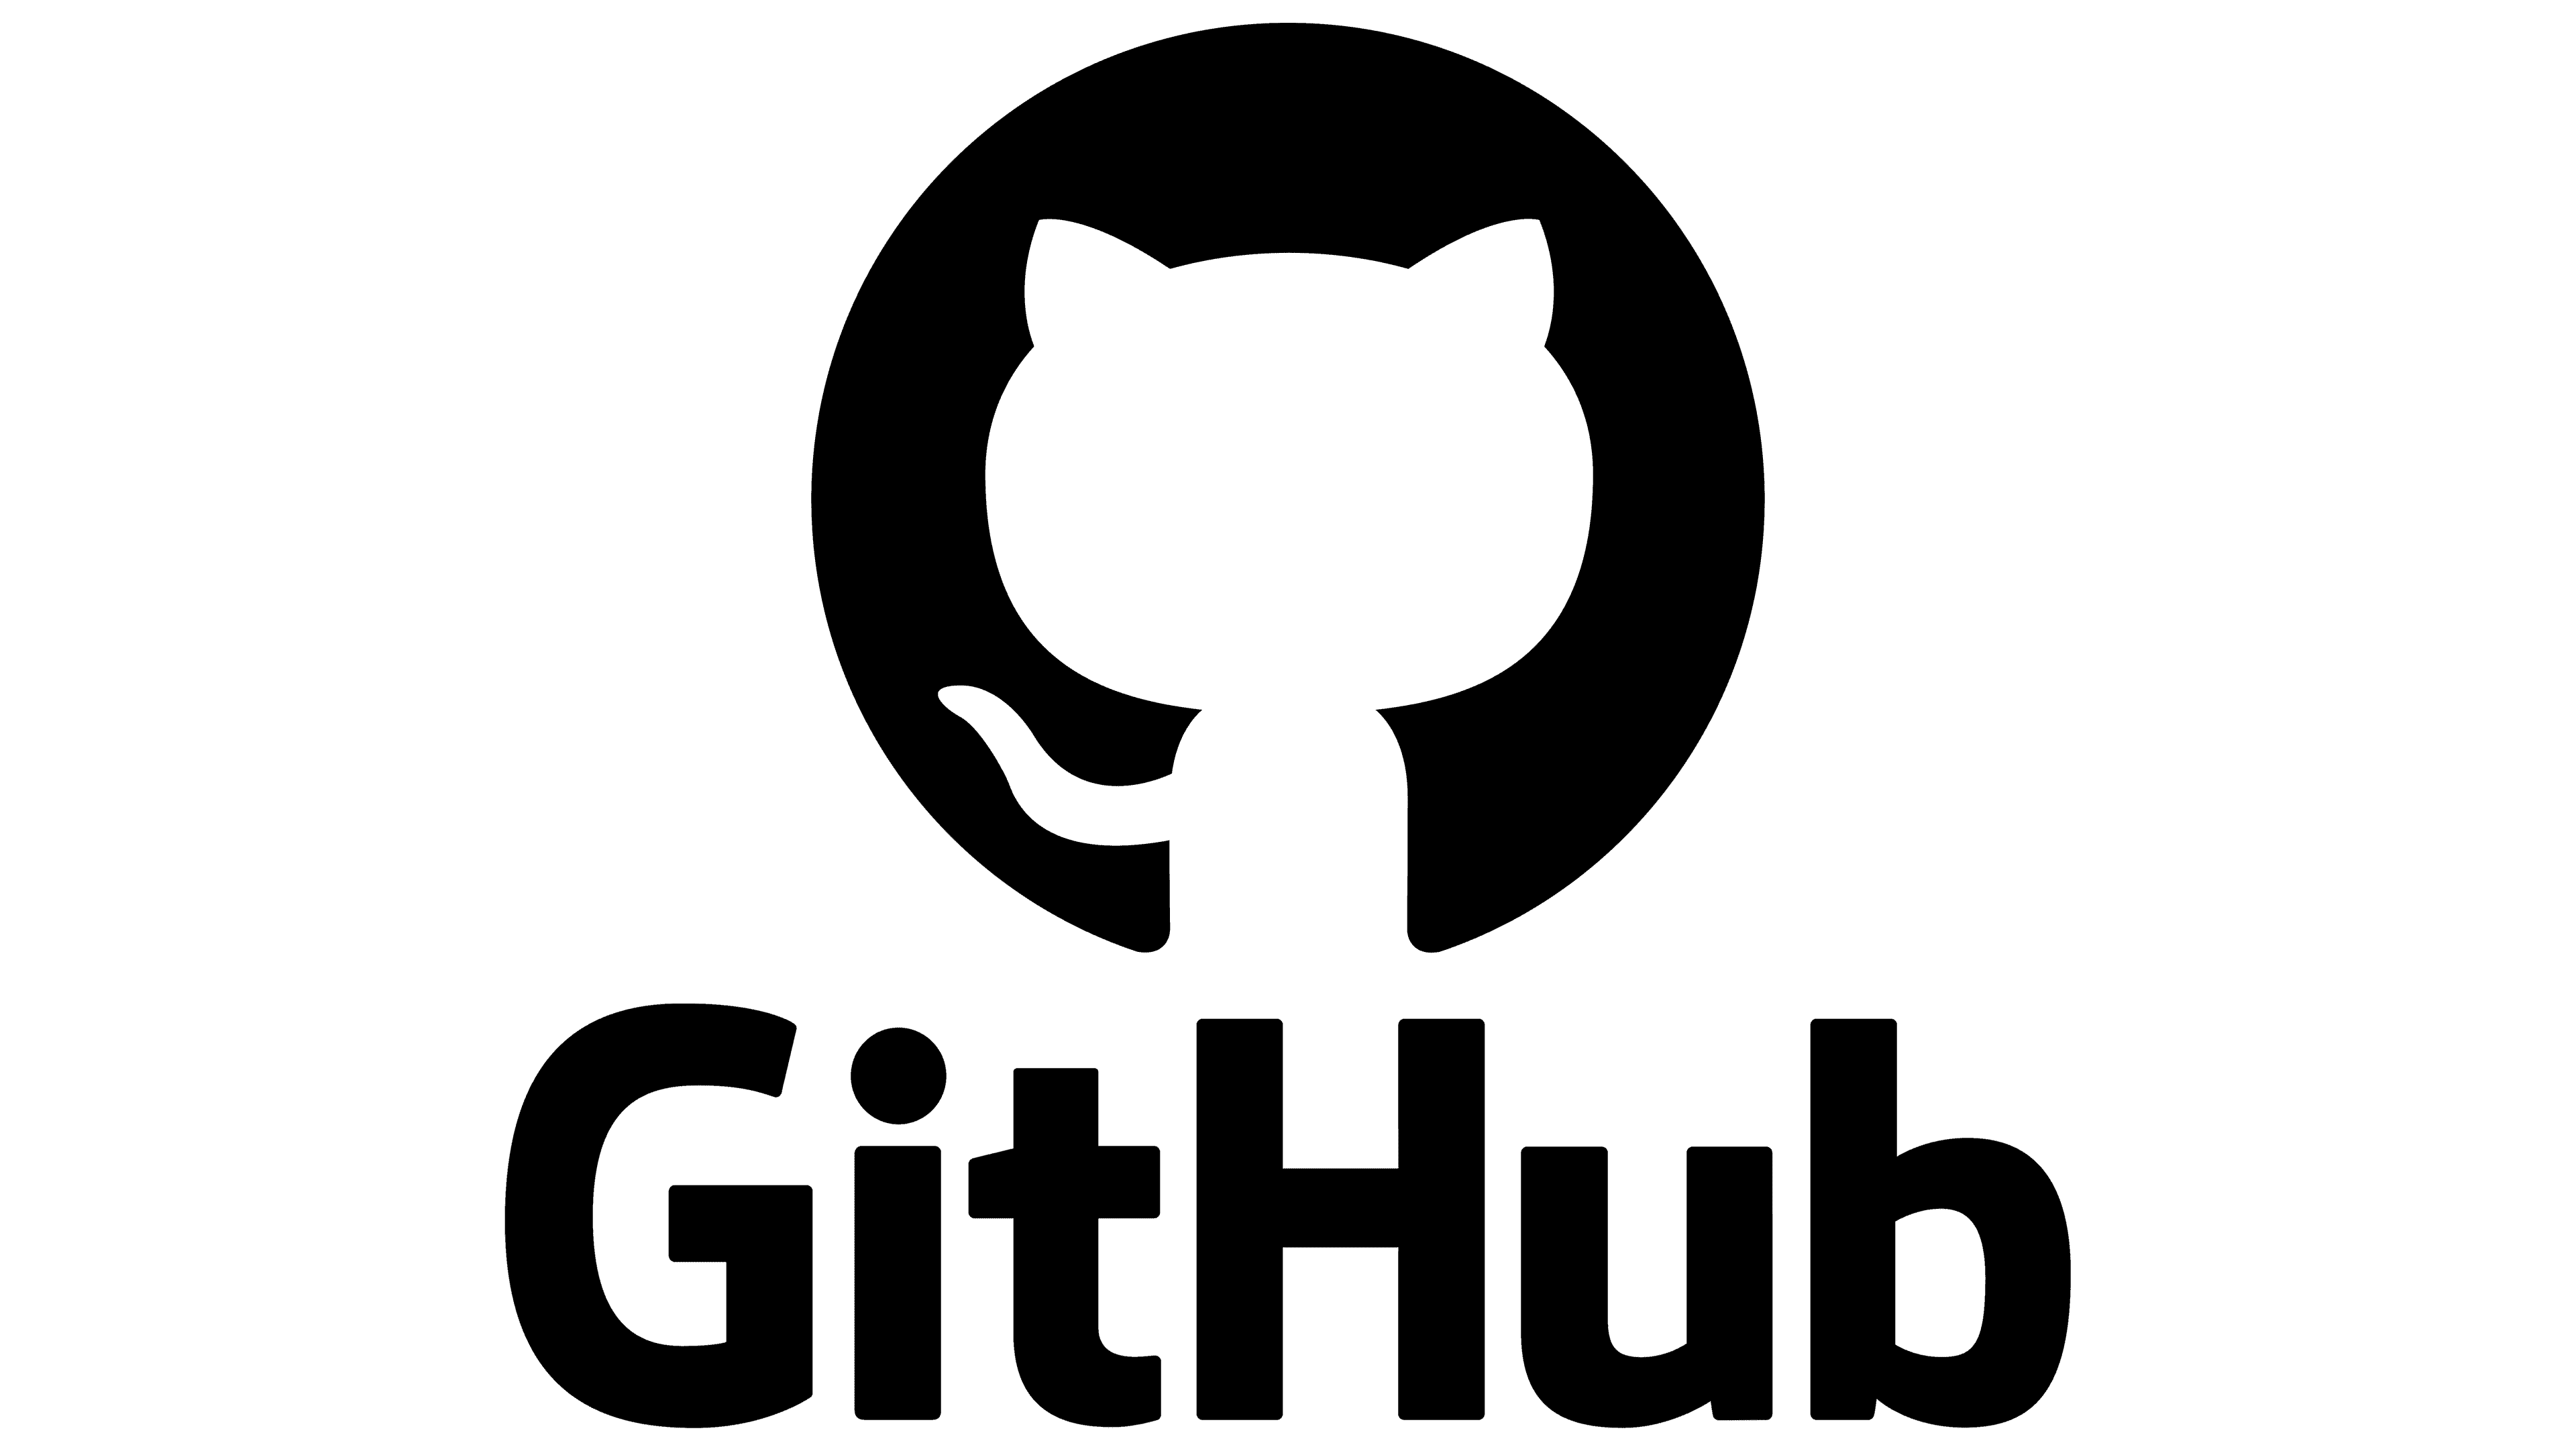 GITHUB users